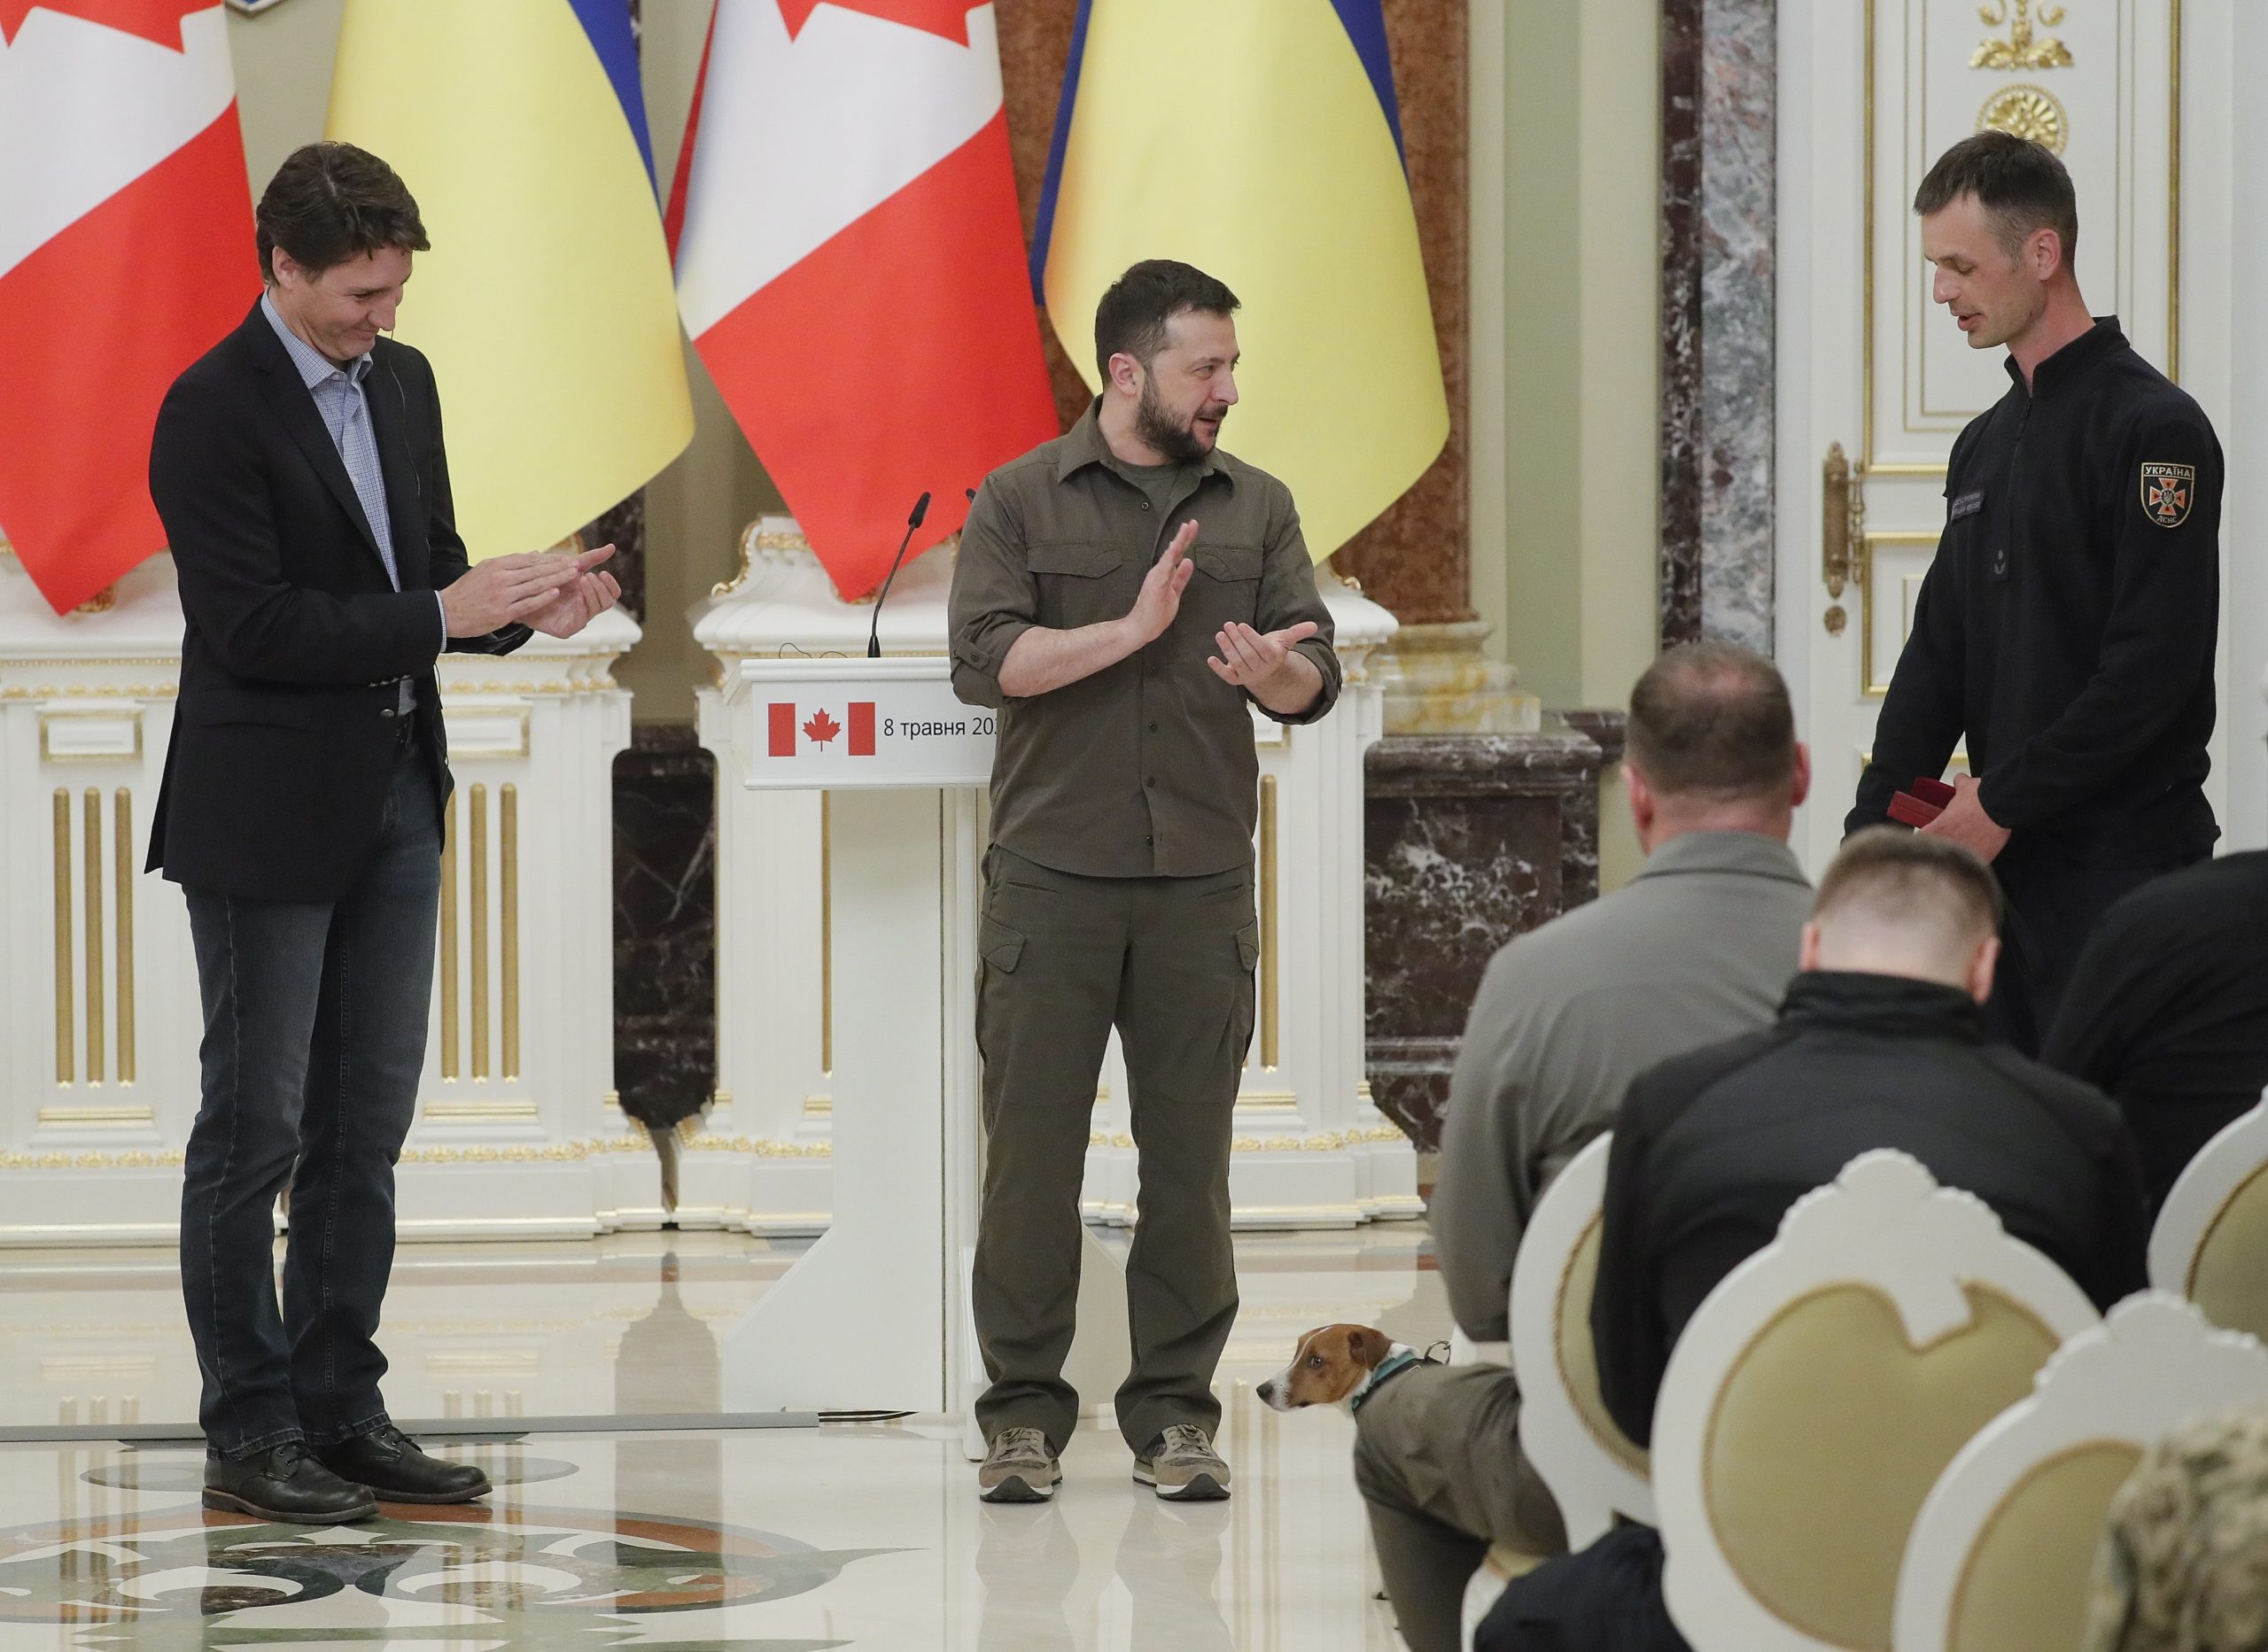  泽伦斯基表扬乌克兰忠勇扫雷犬 加拿大总理见证